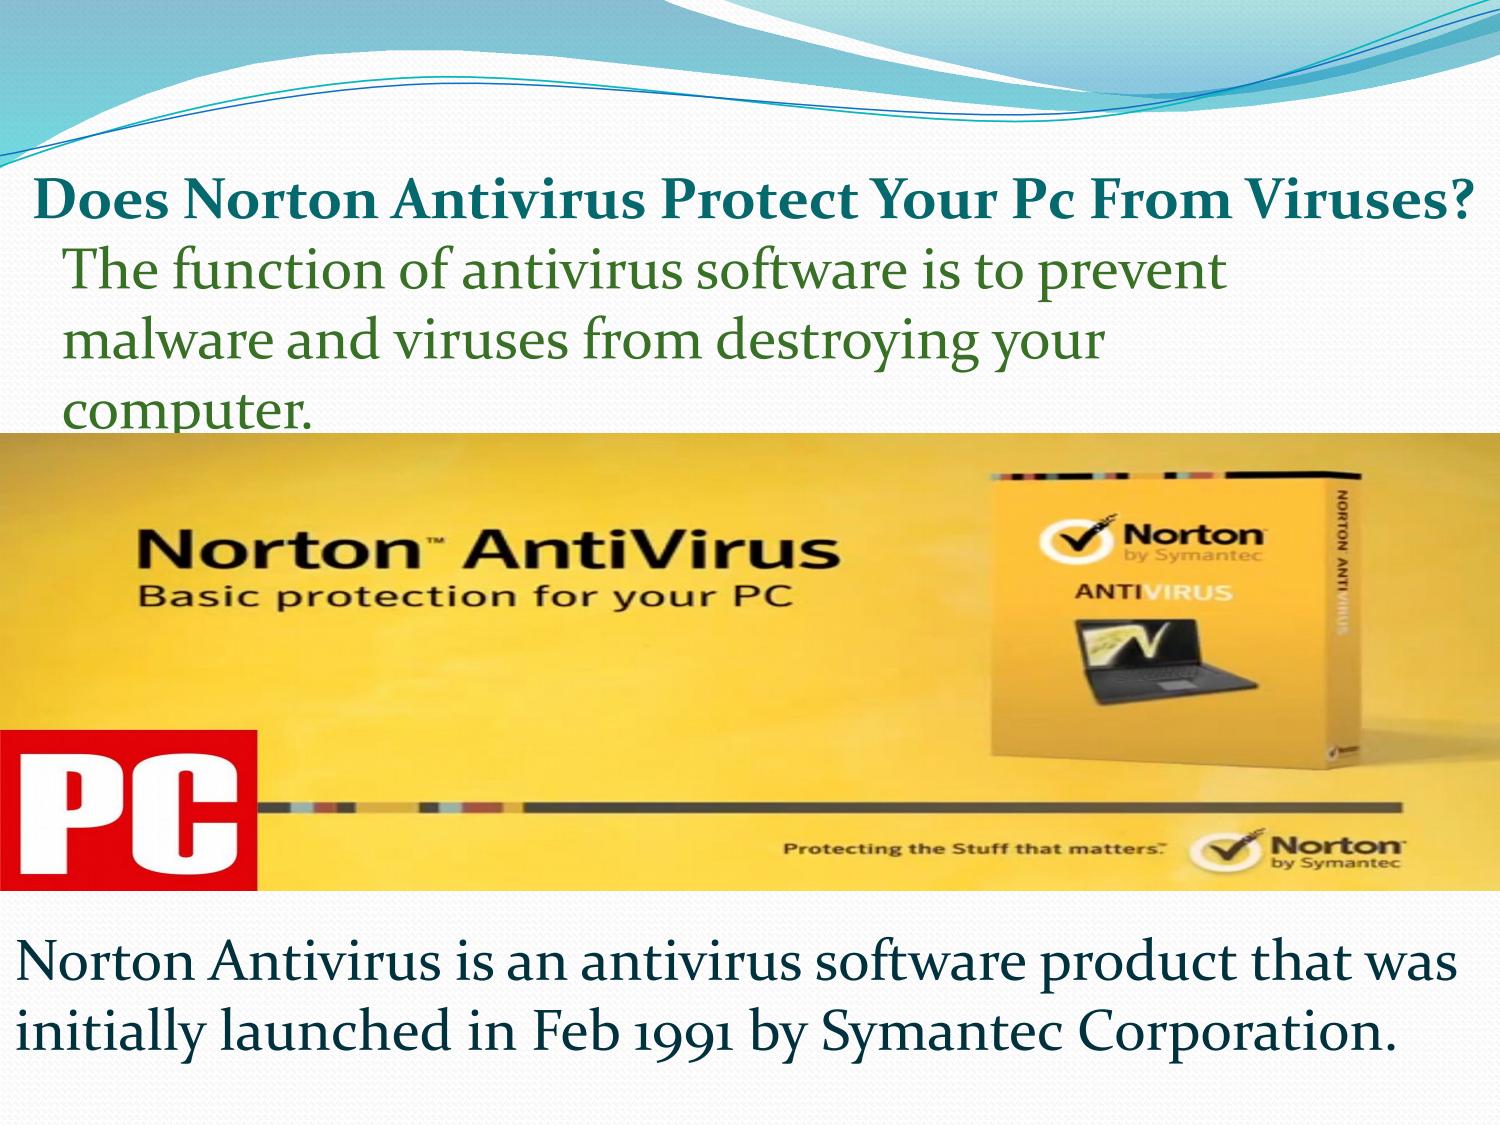 cuál ha sido siempre la función del software antivirus norton